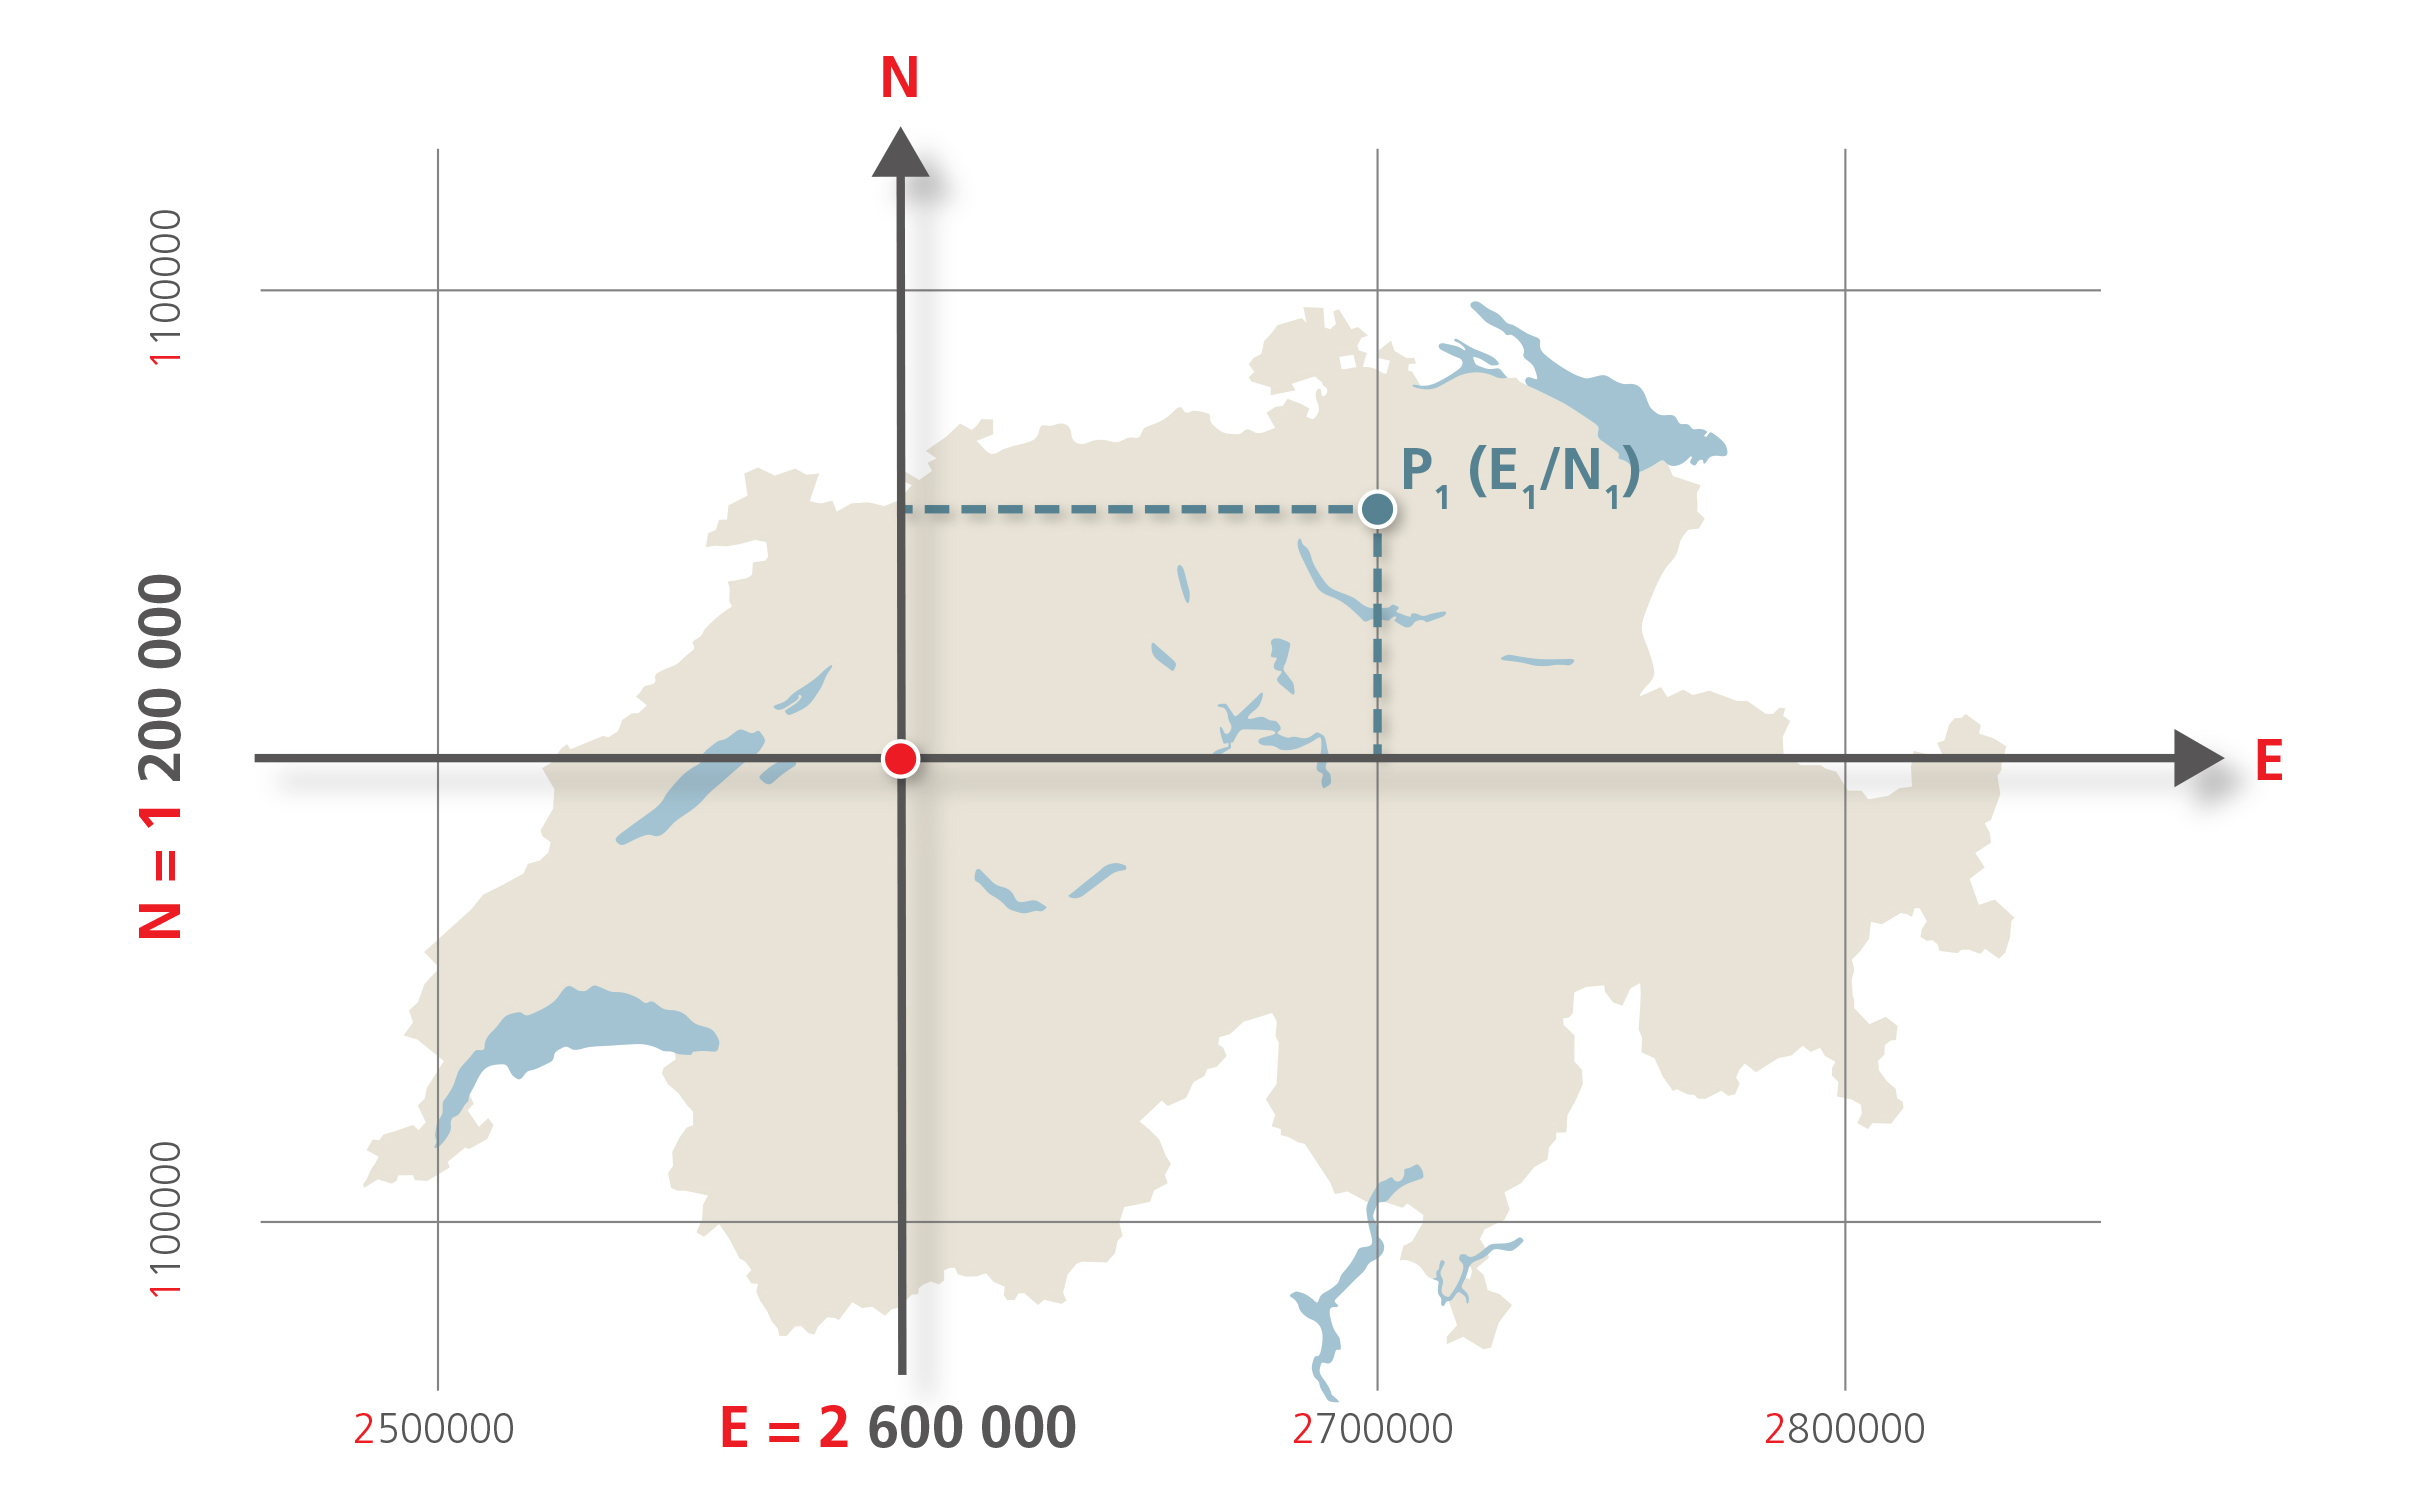 L'illustrazione mostra come vengono create le coordinate svizzere. Il punto di partenza del sistema di coordinate è l'Antico Osservatorio di Berna, che oggi ha le coordinate 1 200 000 / 2 600 000.